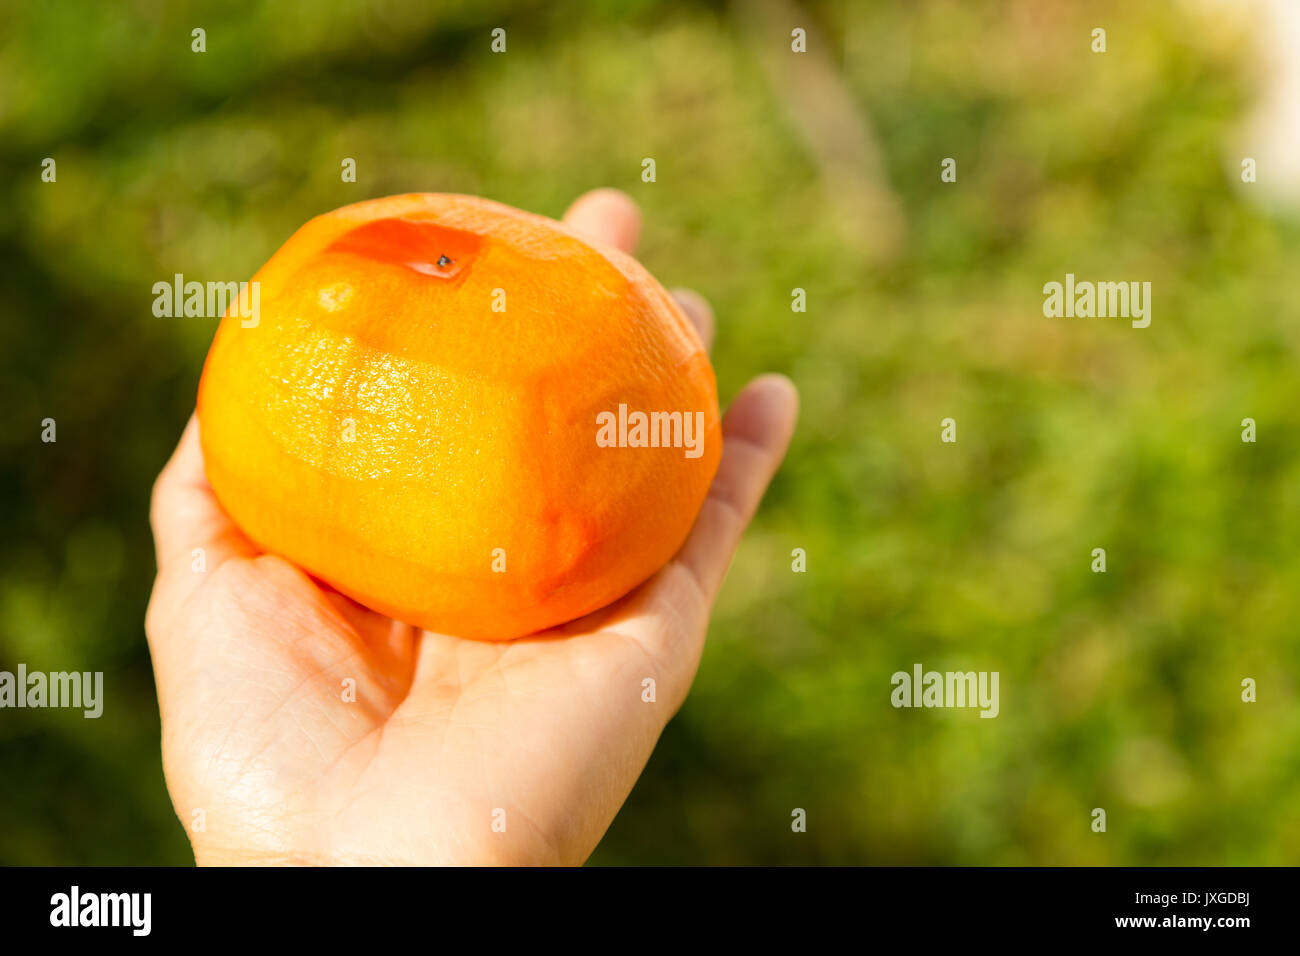 Hand holding peeled kaki (Fuyu persimmon) fruit Stock Photo